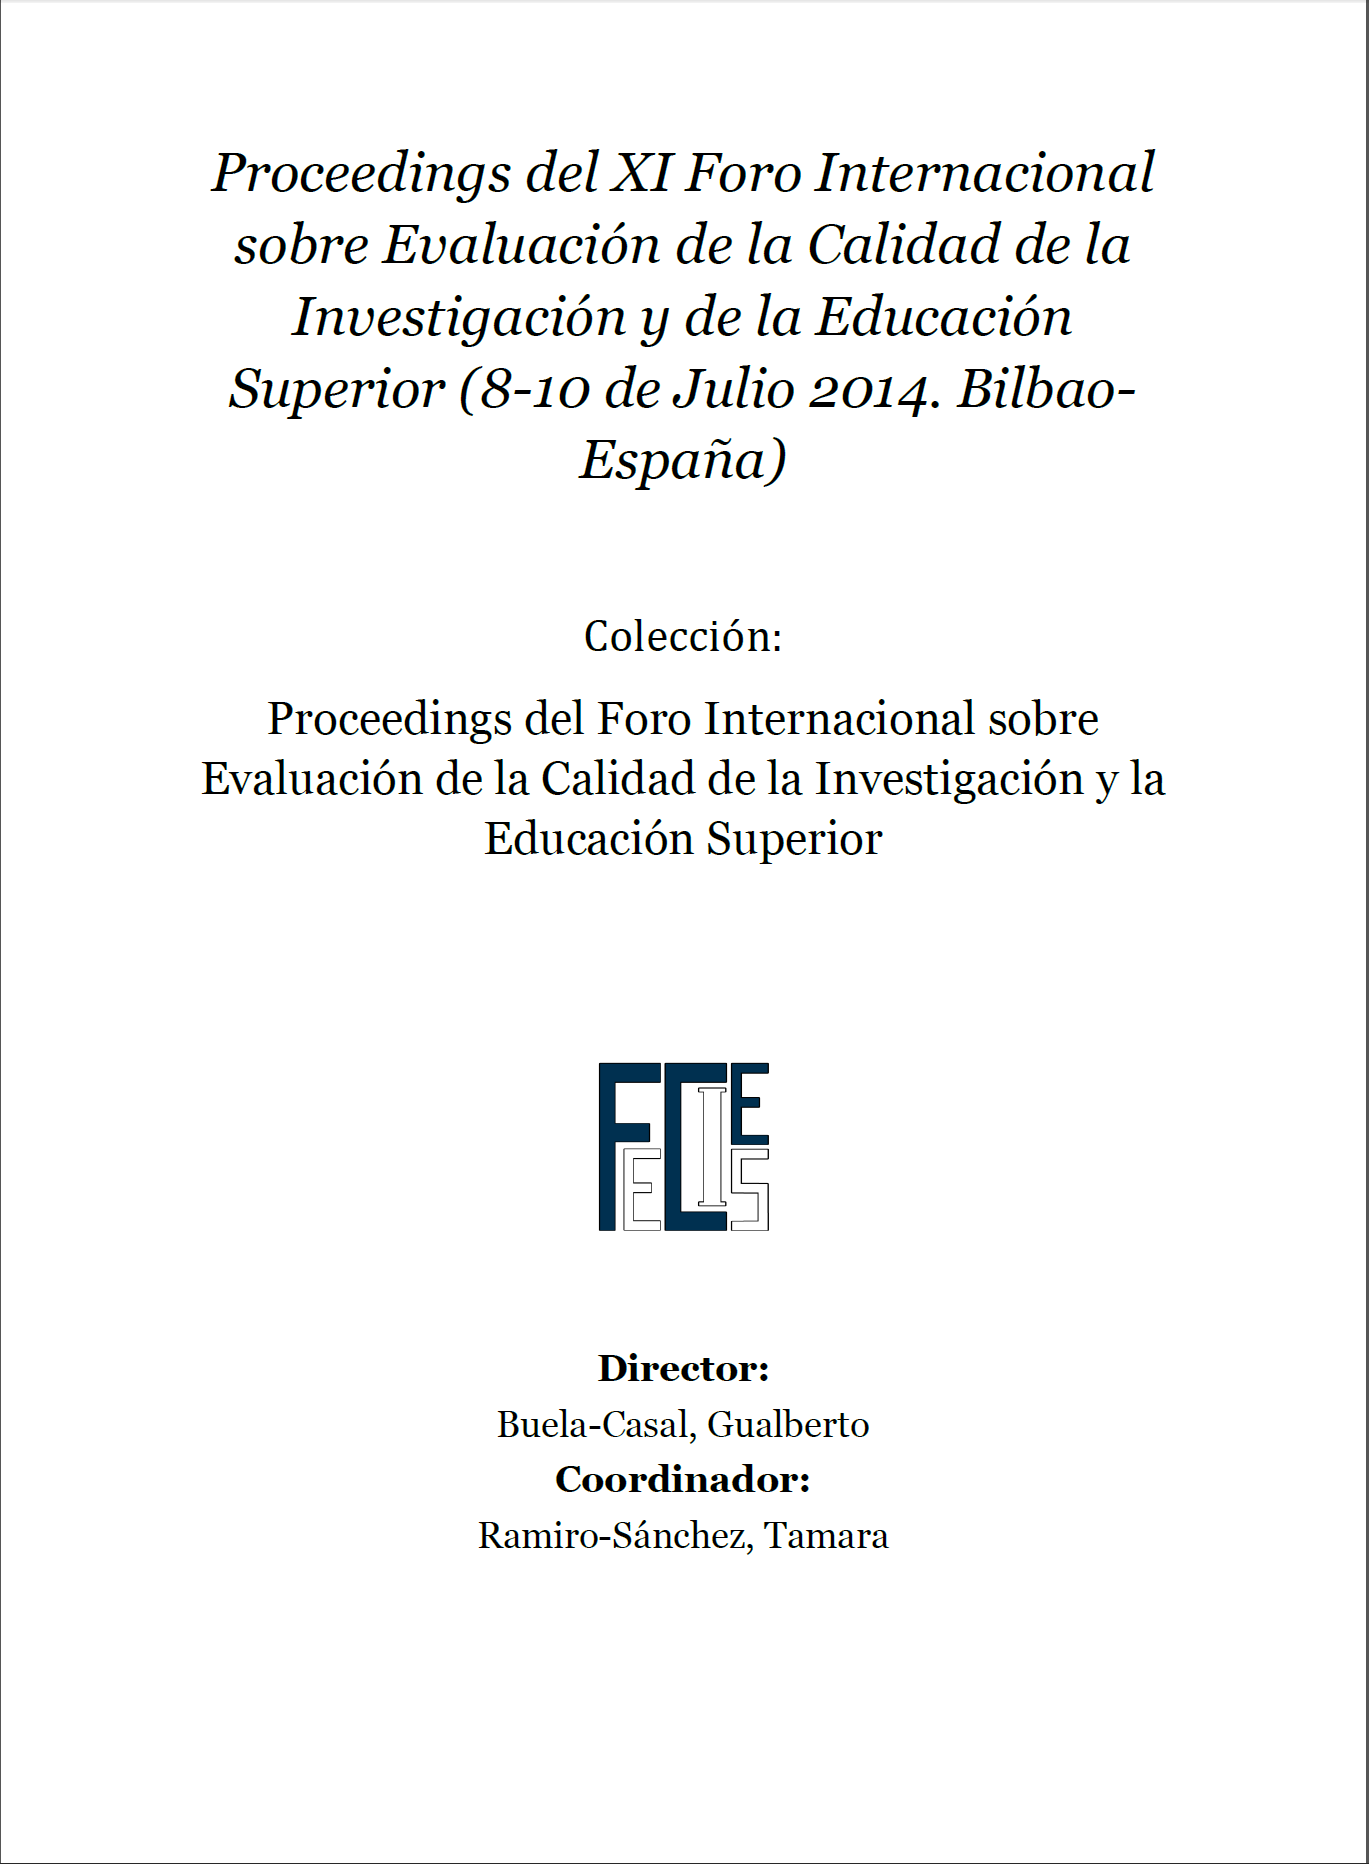 Imagen de portada del libro Proceedings del XI Foro Internacional sobre Evaluación de la Calidad de la Investigación y de la Educación Superior (8-10 de Julio 2014. Bilbao-España)